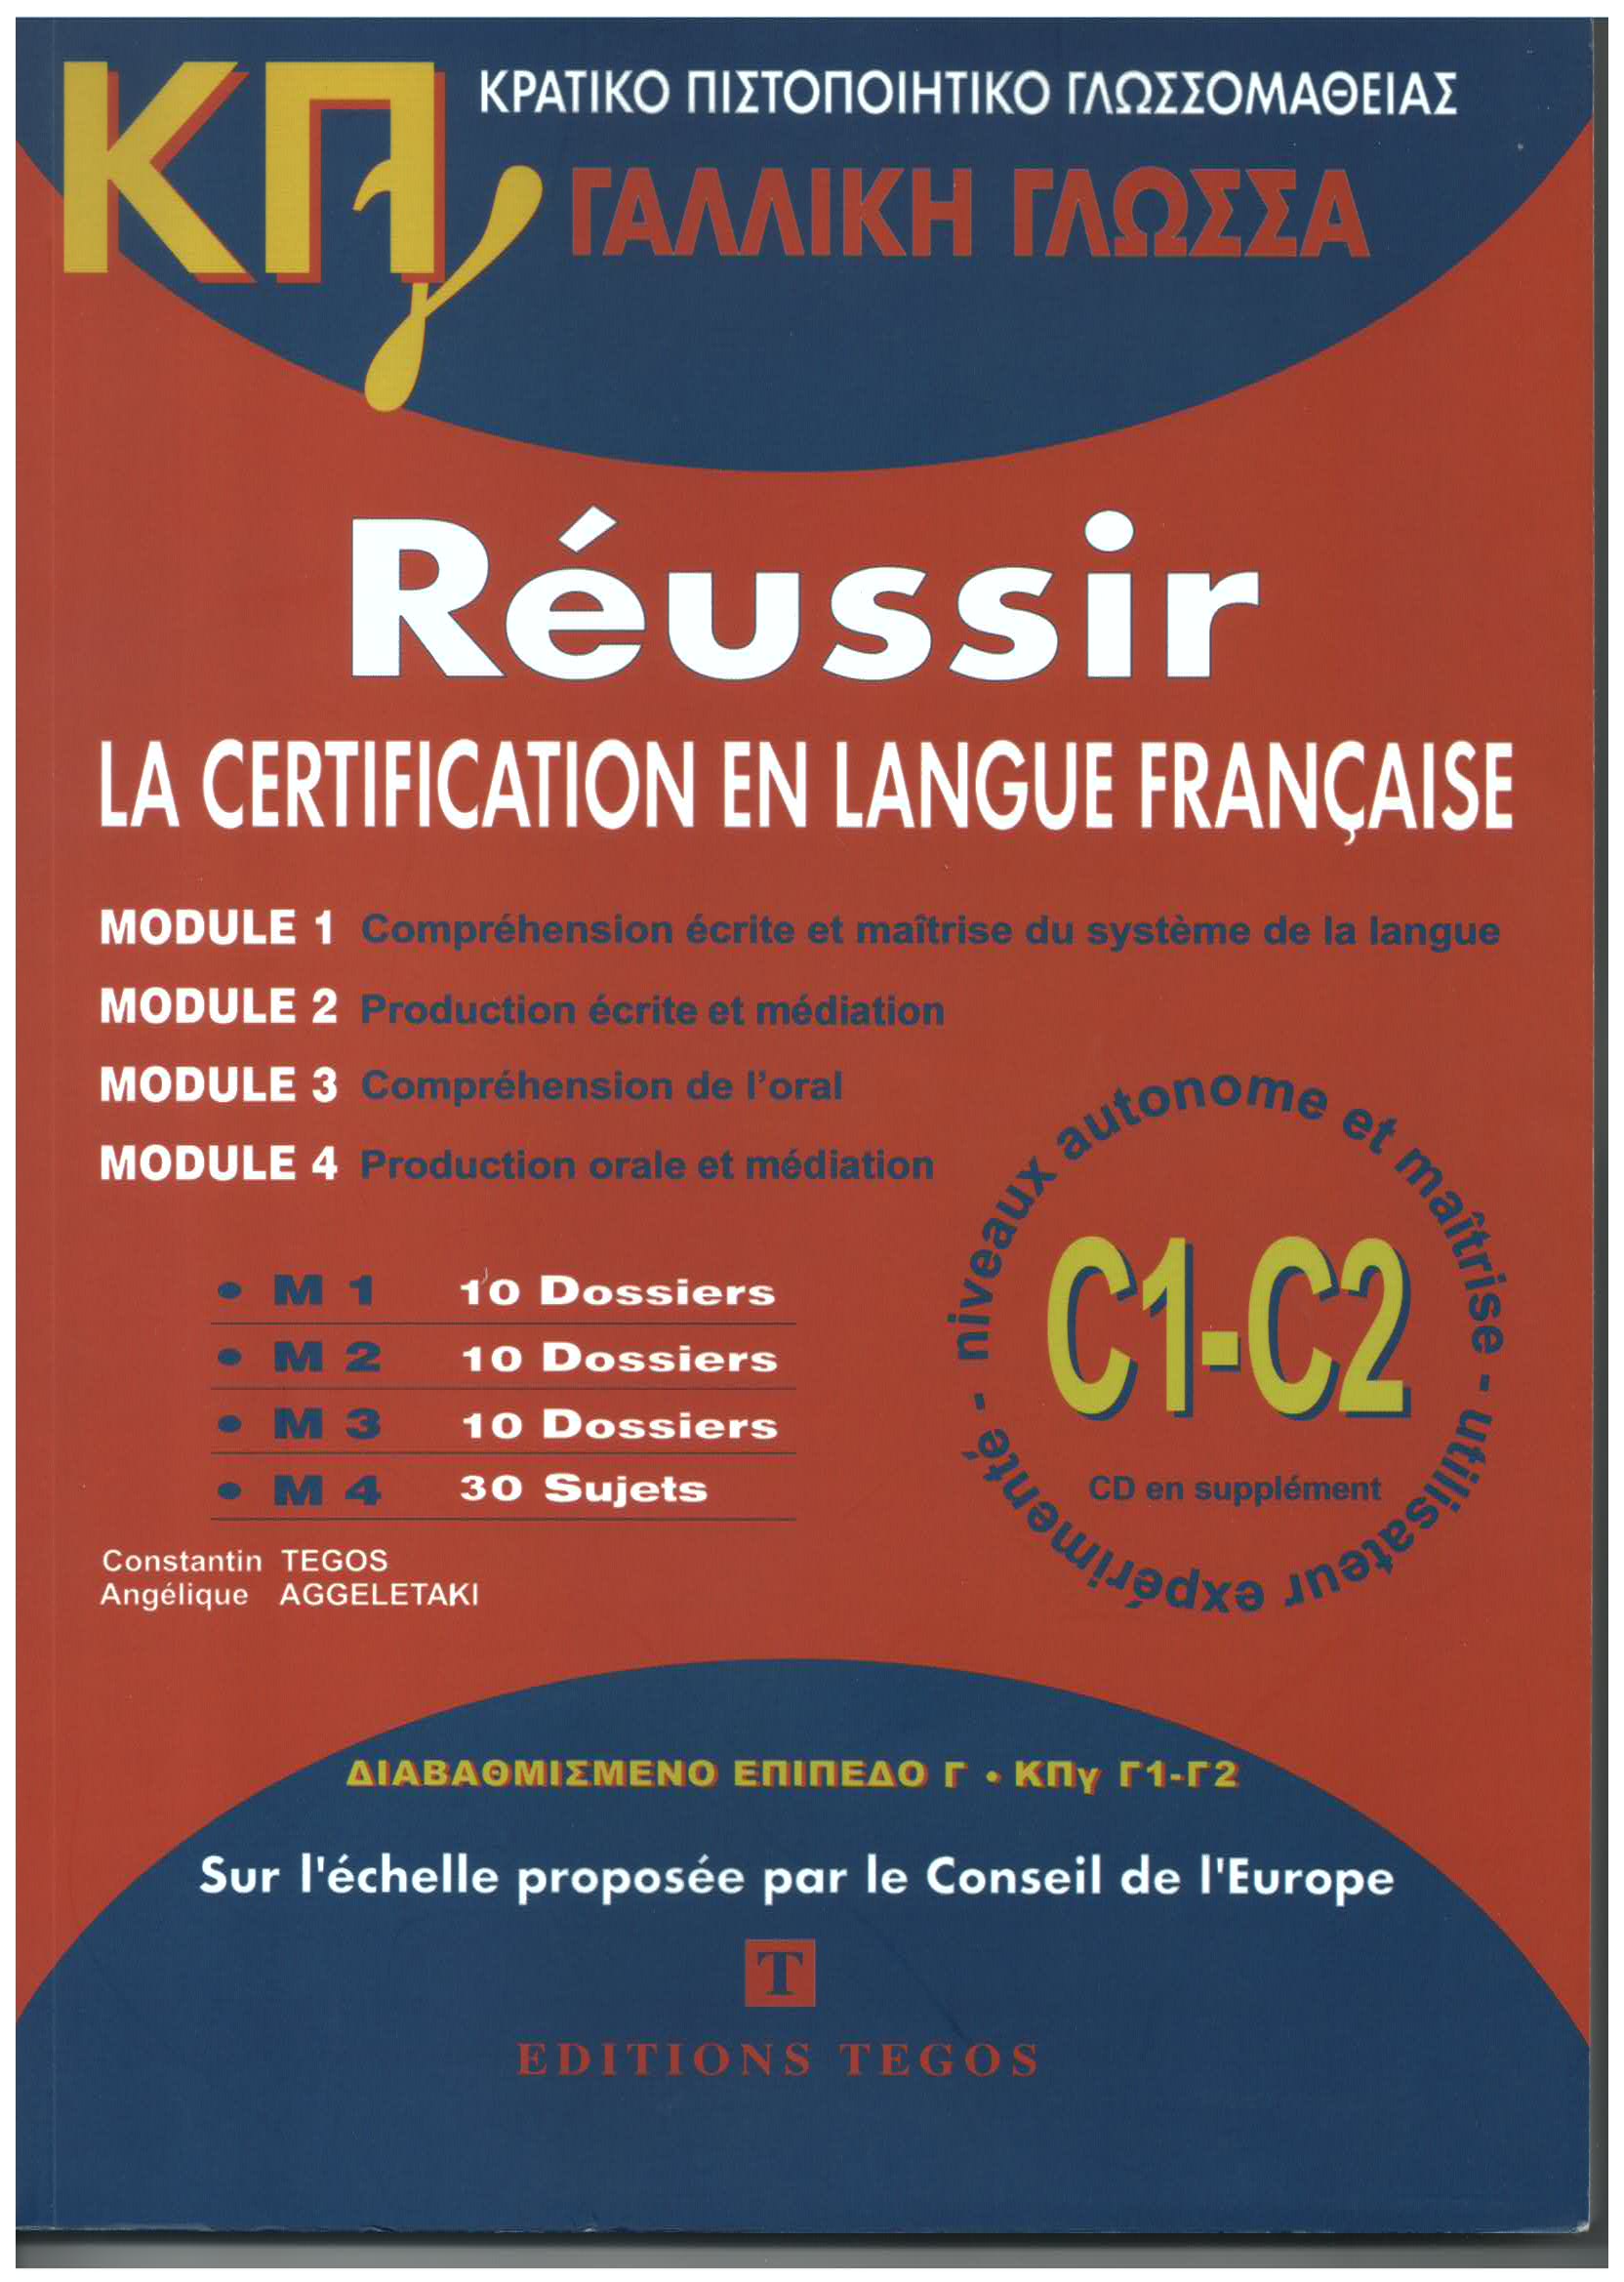 ΚΠΓ C1-C2 - Réussir la Certification en Langue Française